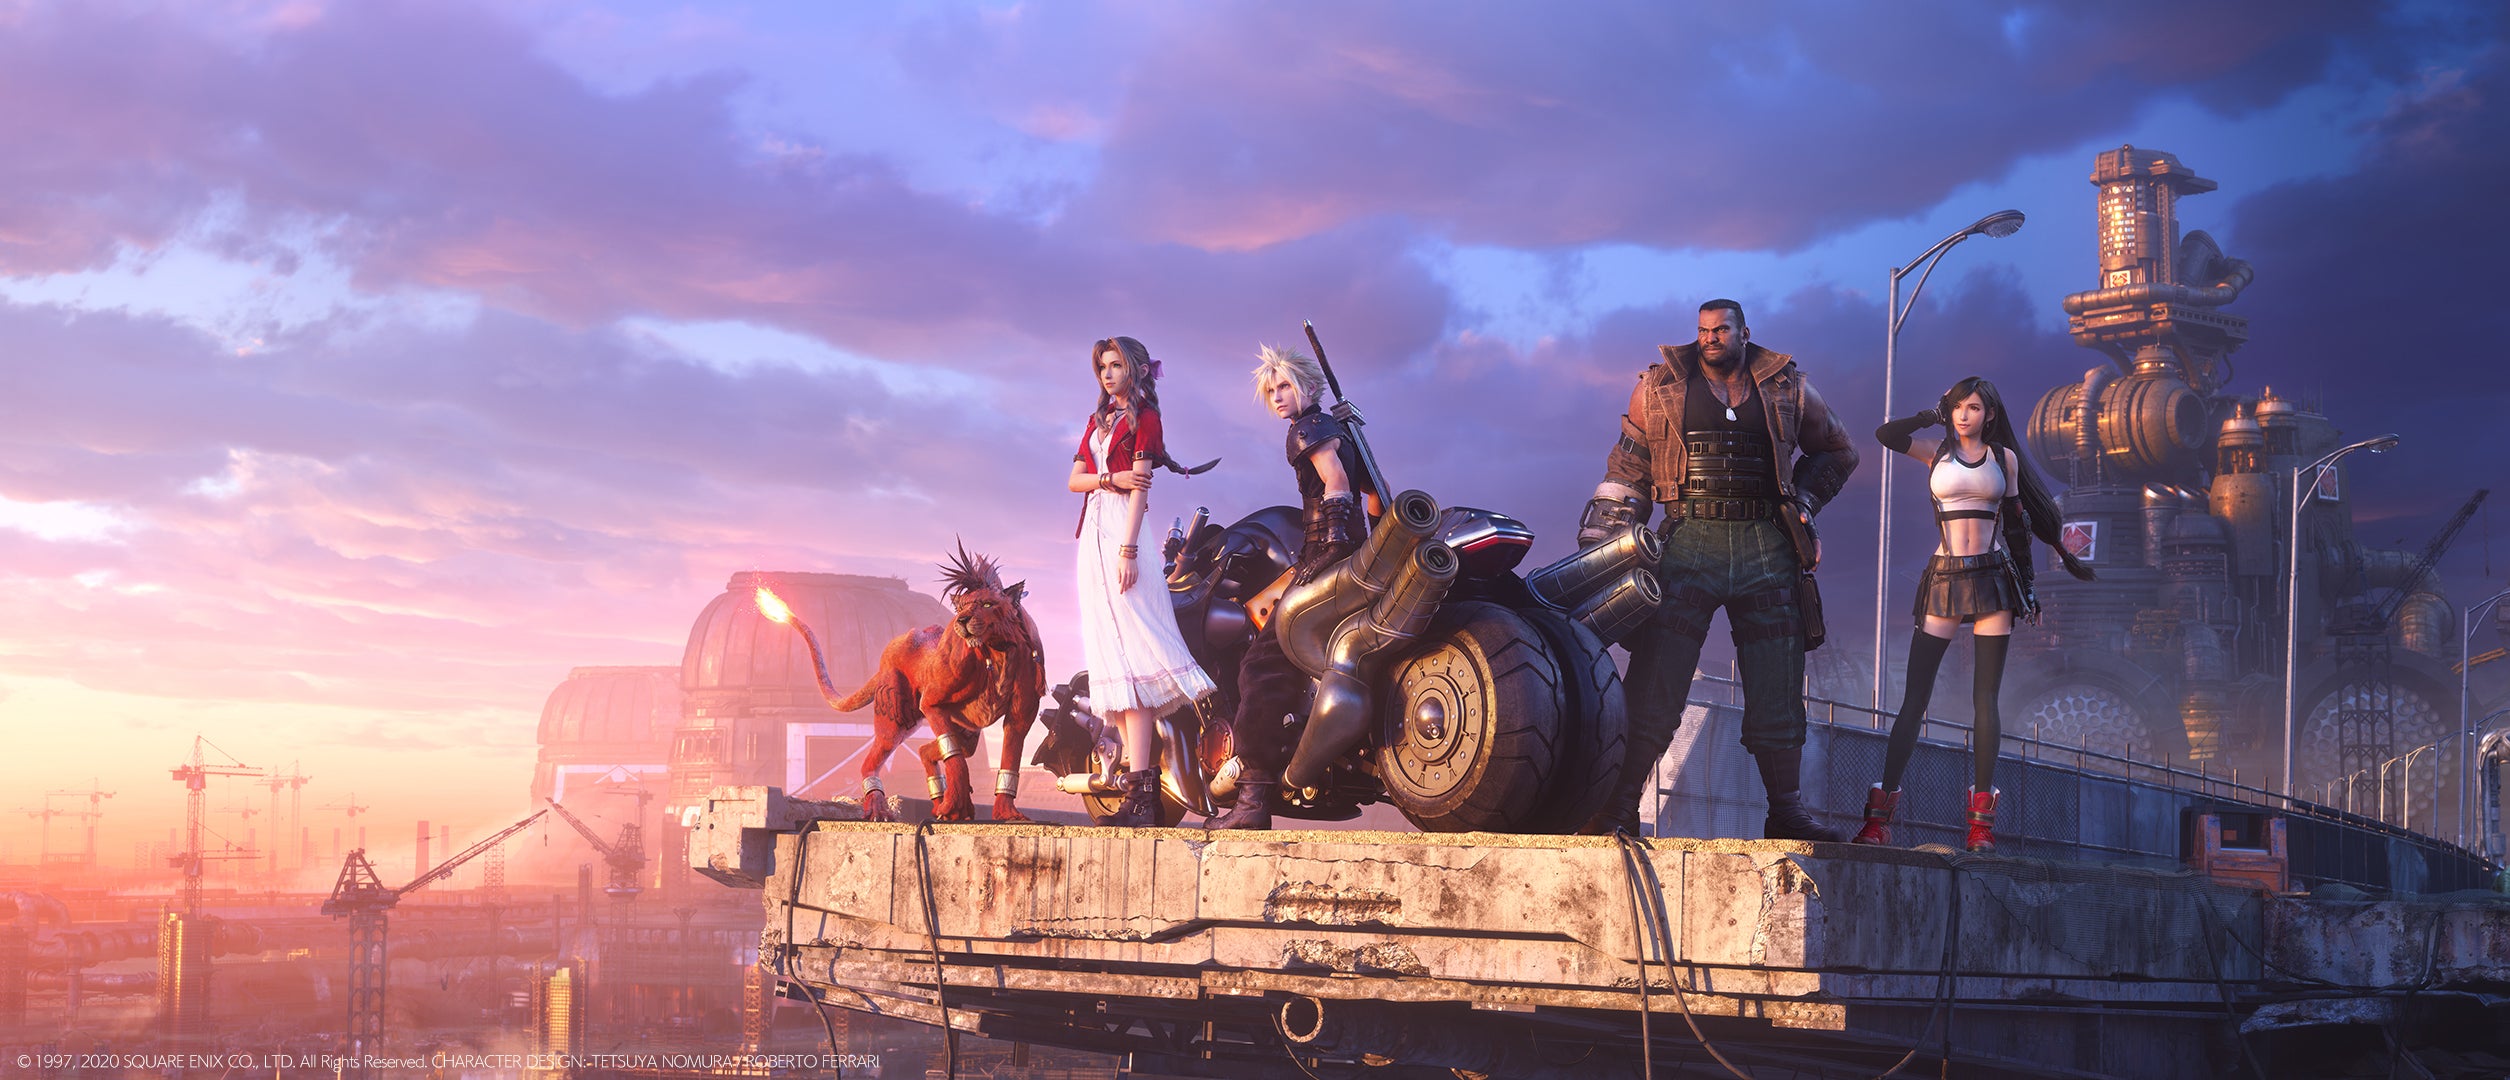 Imagem para Diretor de Final Fantasy 7 Remake diz que Horizon Zero Dawn foi uma grande inspiração